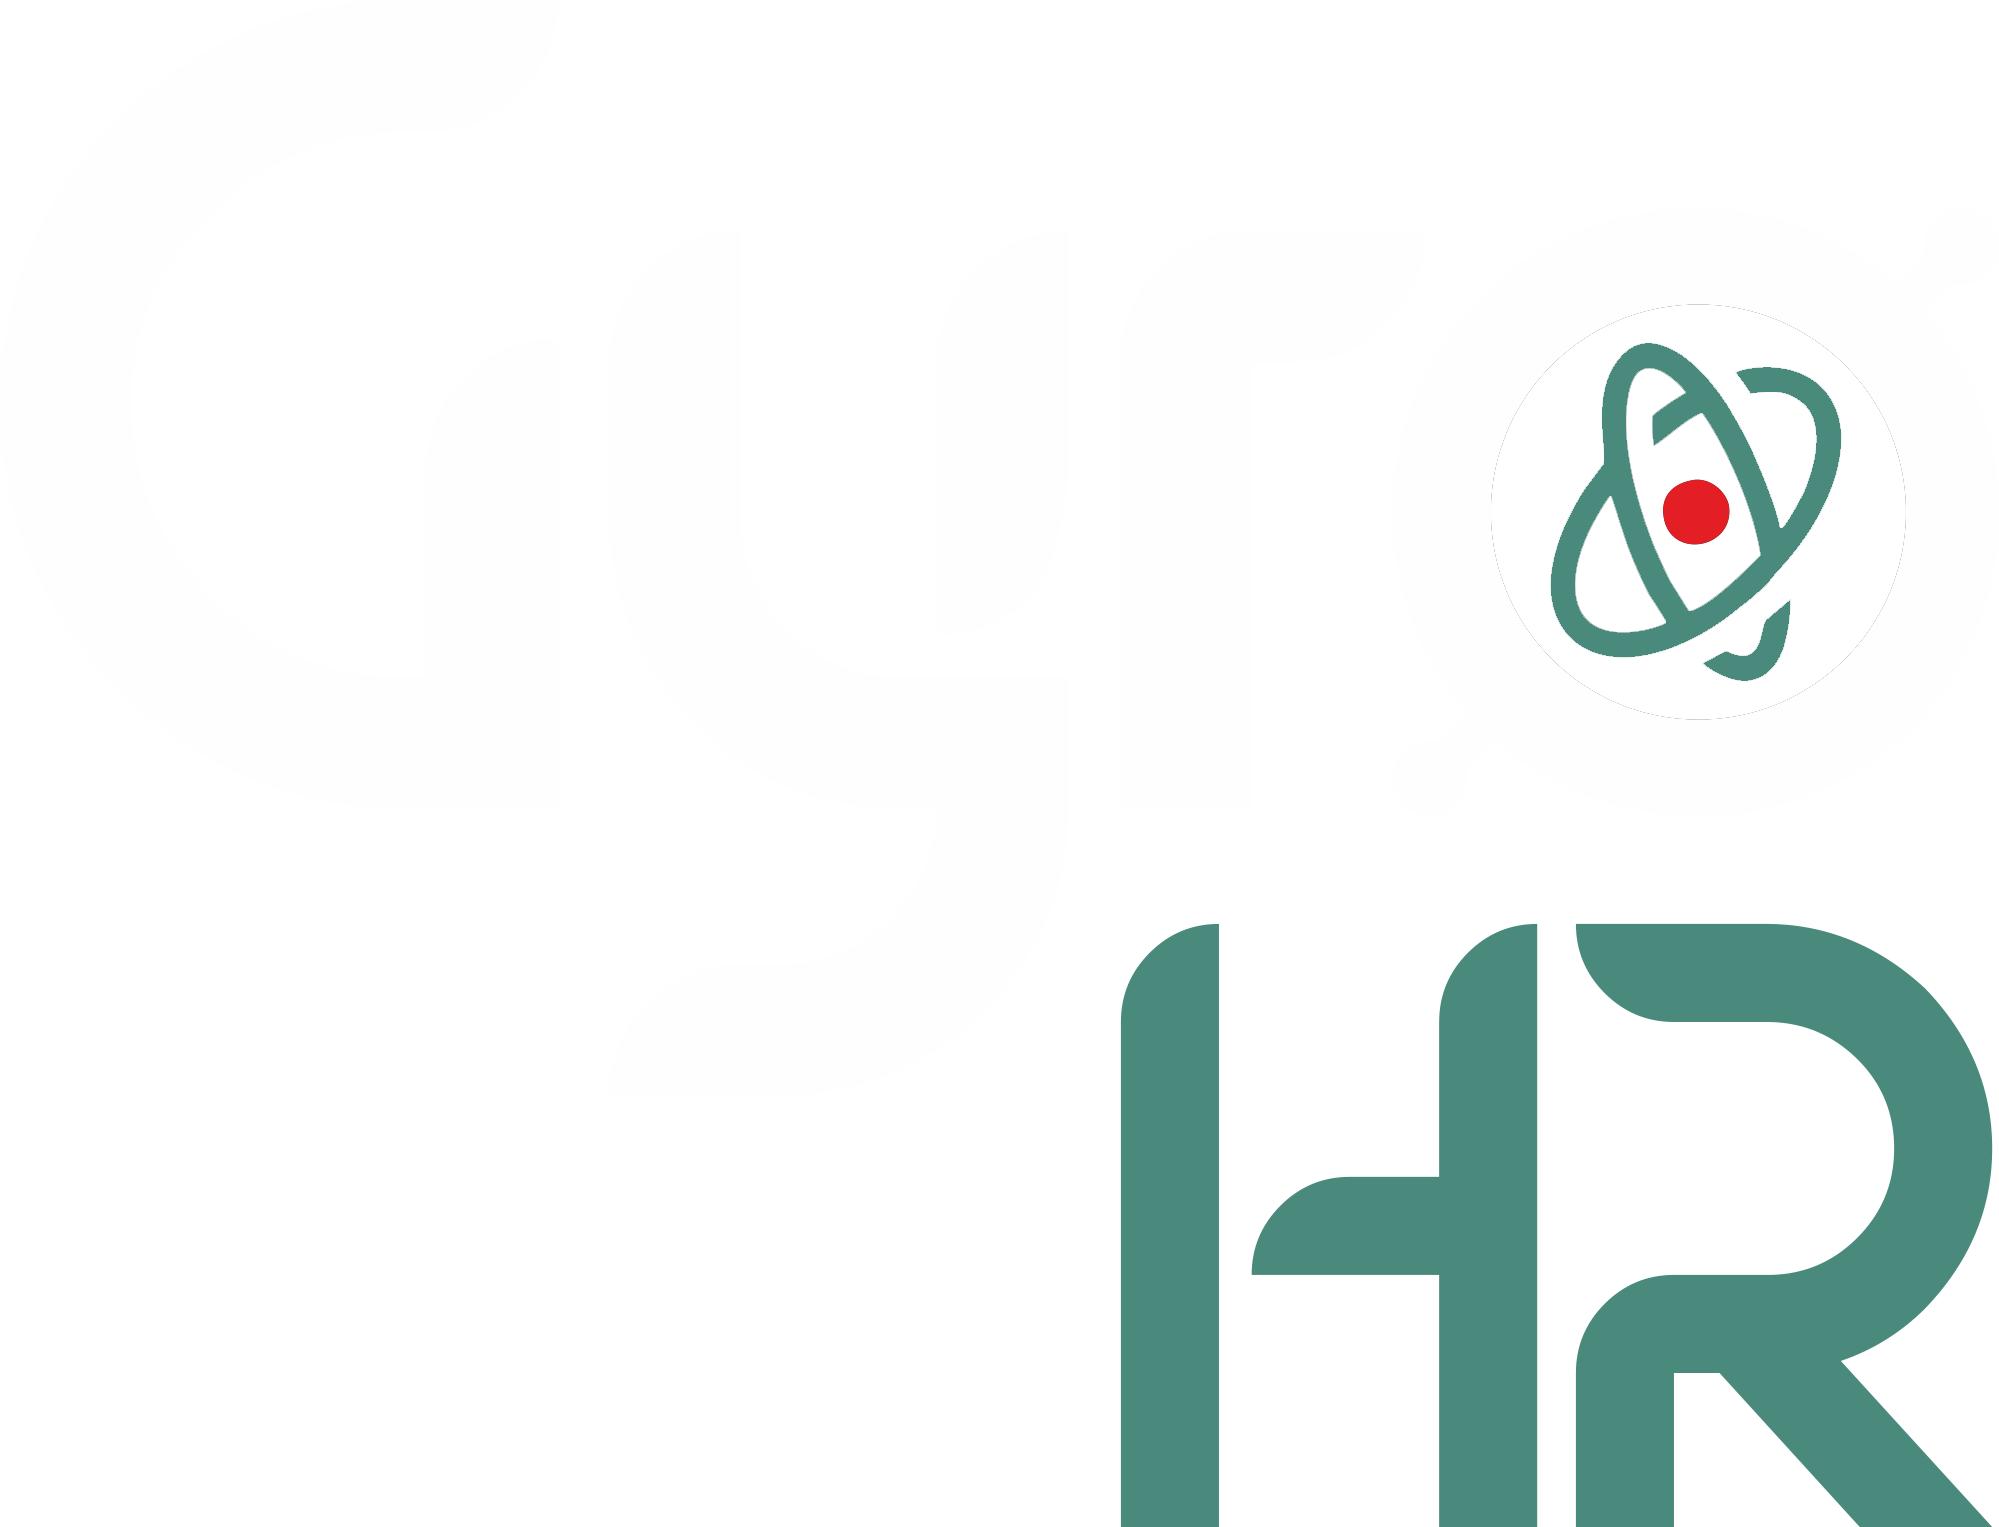 GyroHR